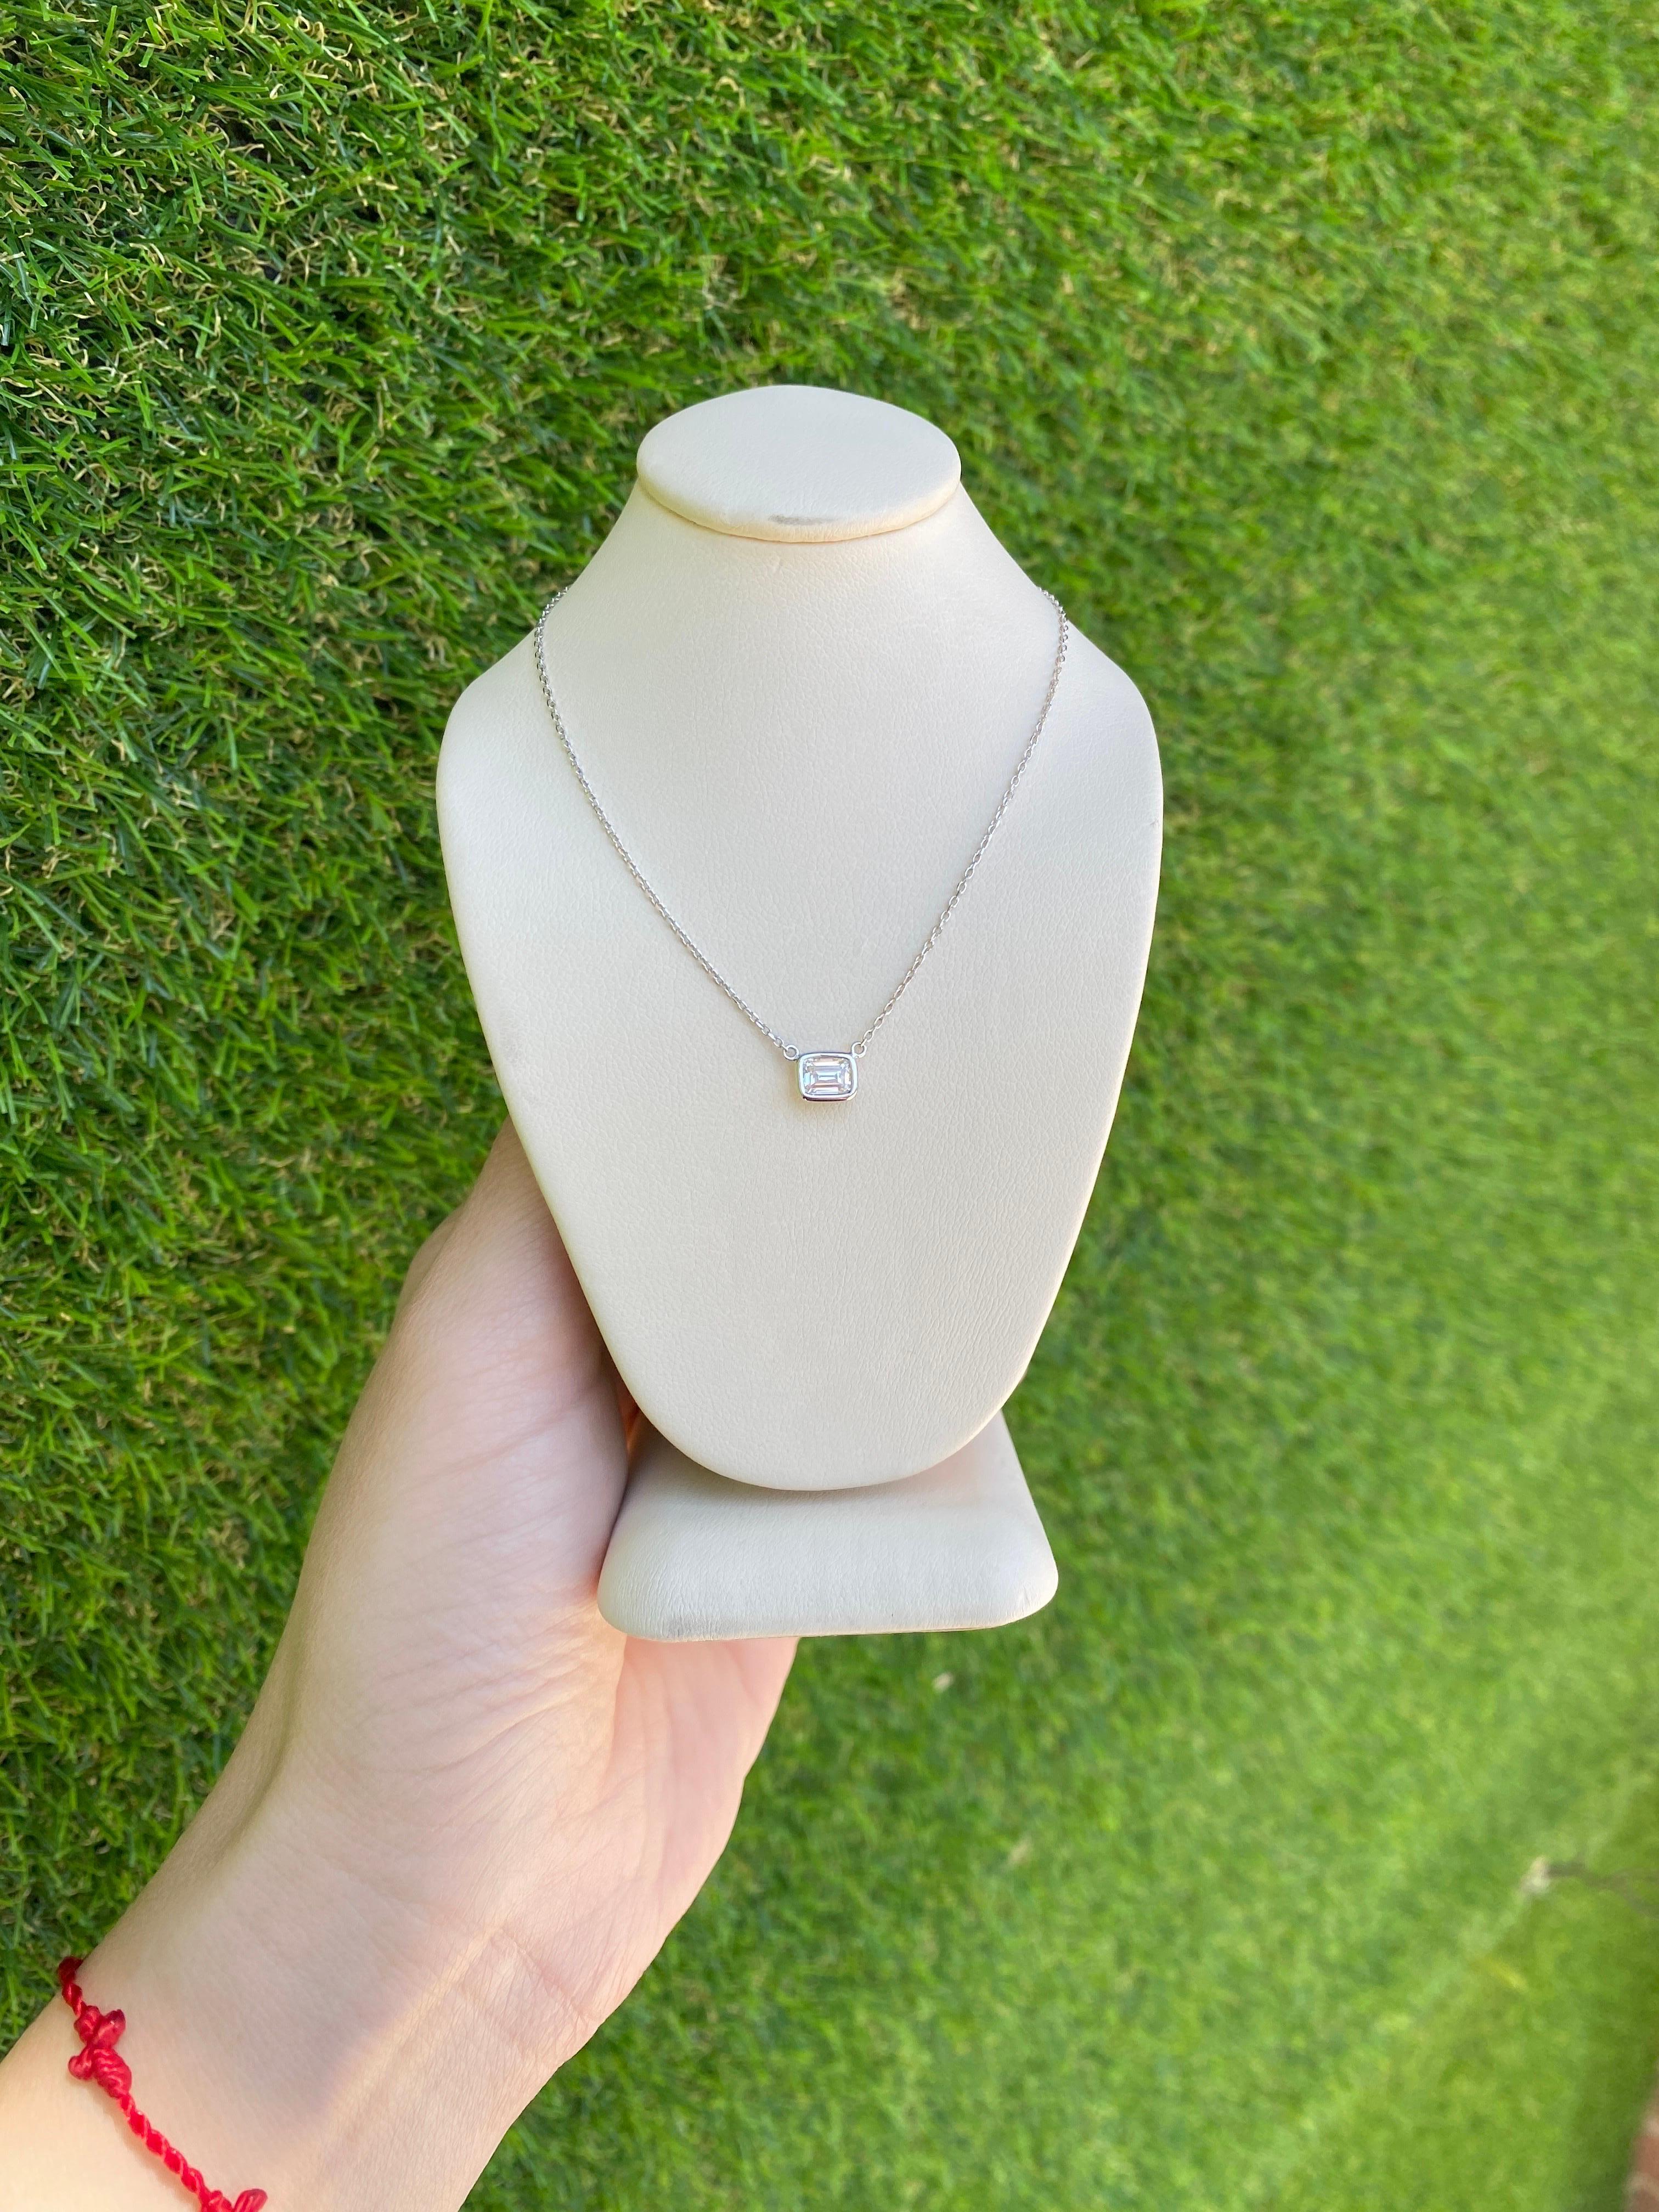 0.44 Carat Natural Emerald Cut Bezel Set Diamond Pendant Necklace 14k White Gold For Sale 2